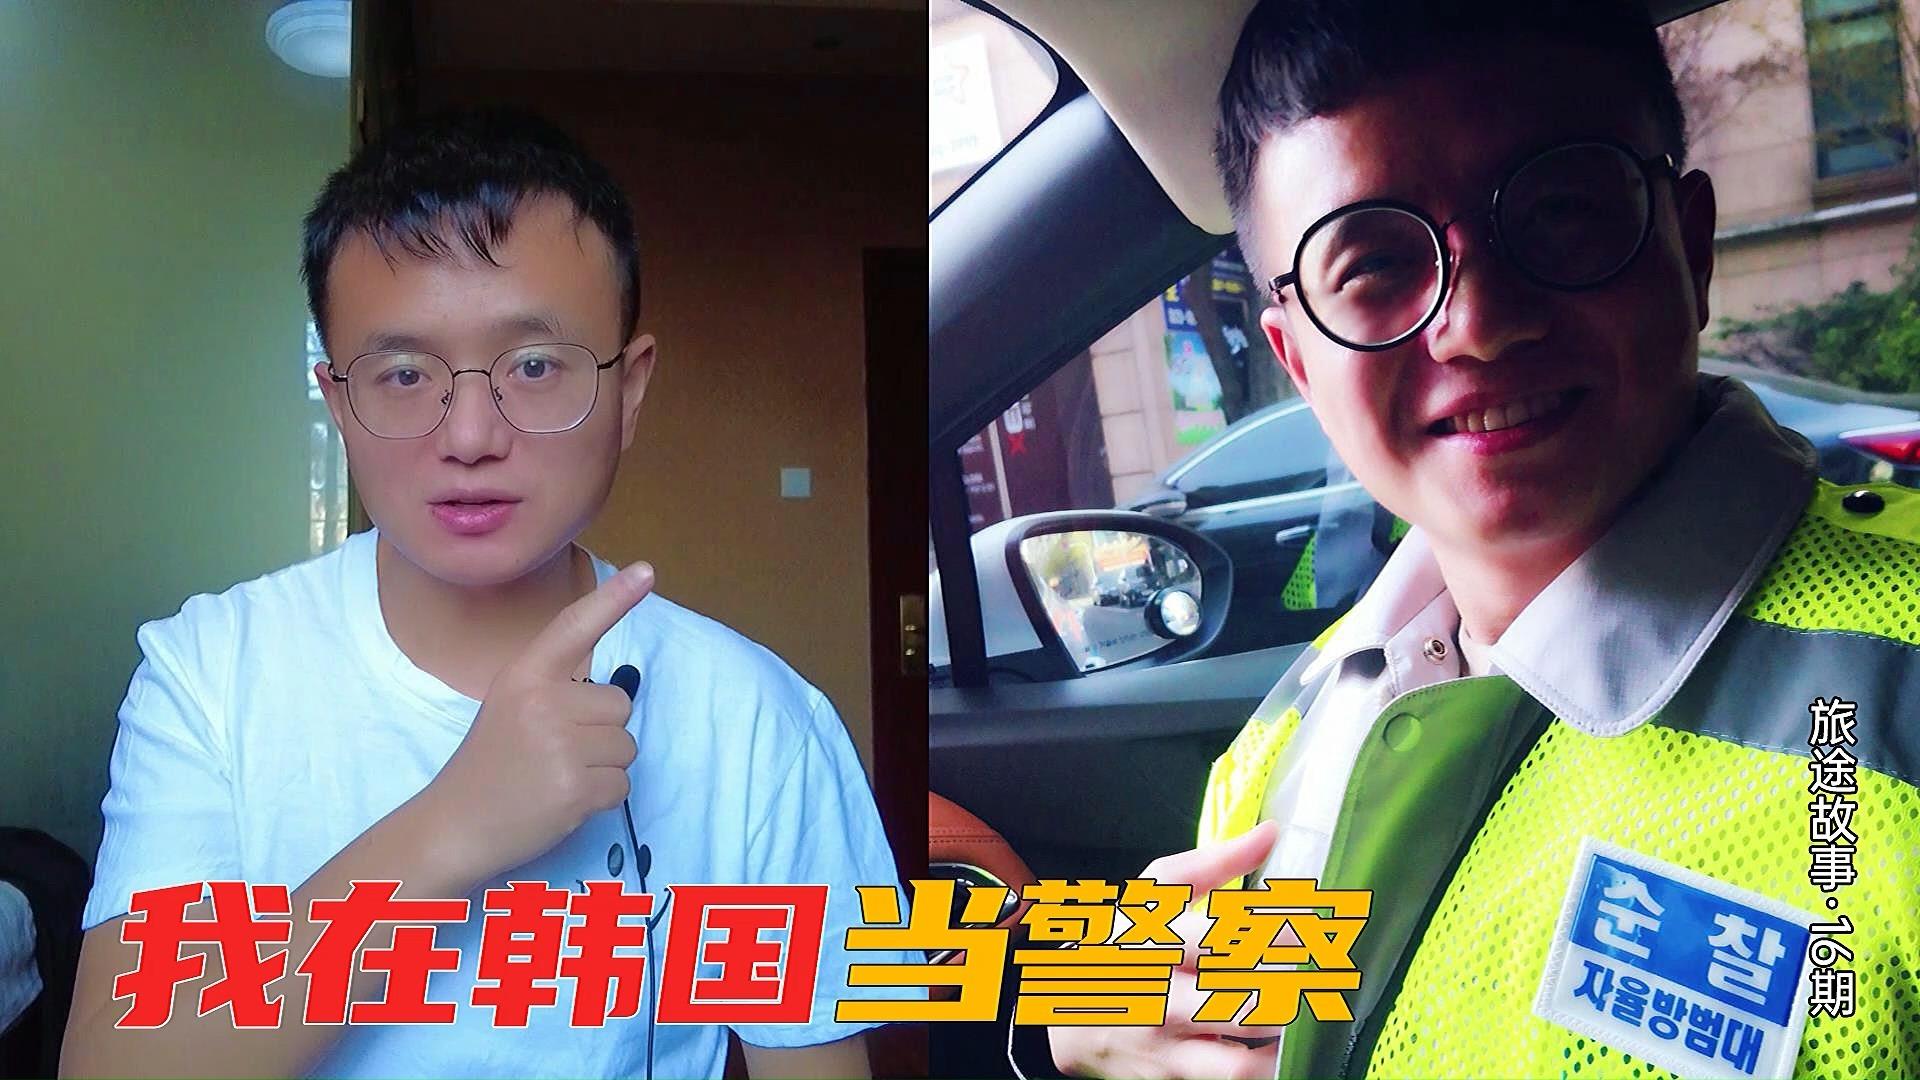 中国人或是华裔可以在外国当警察么,会不会受到就业歧视?